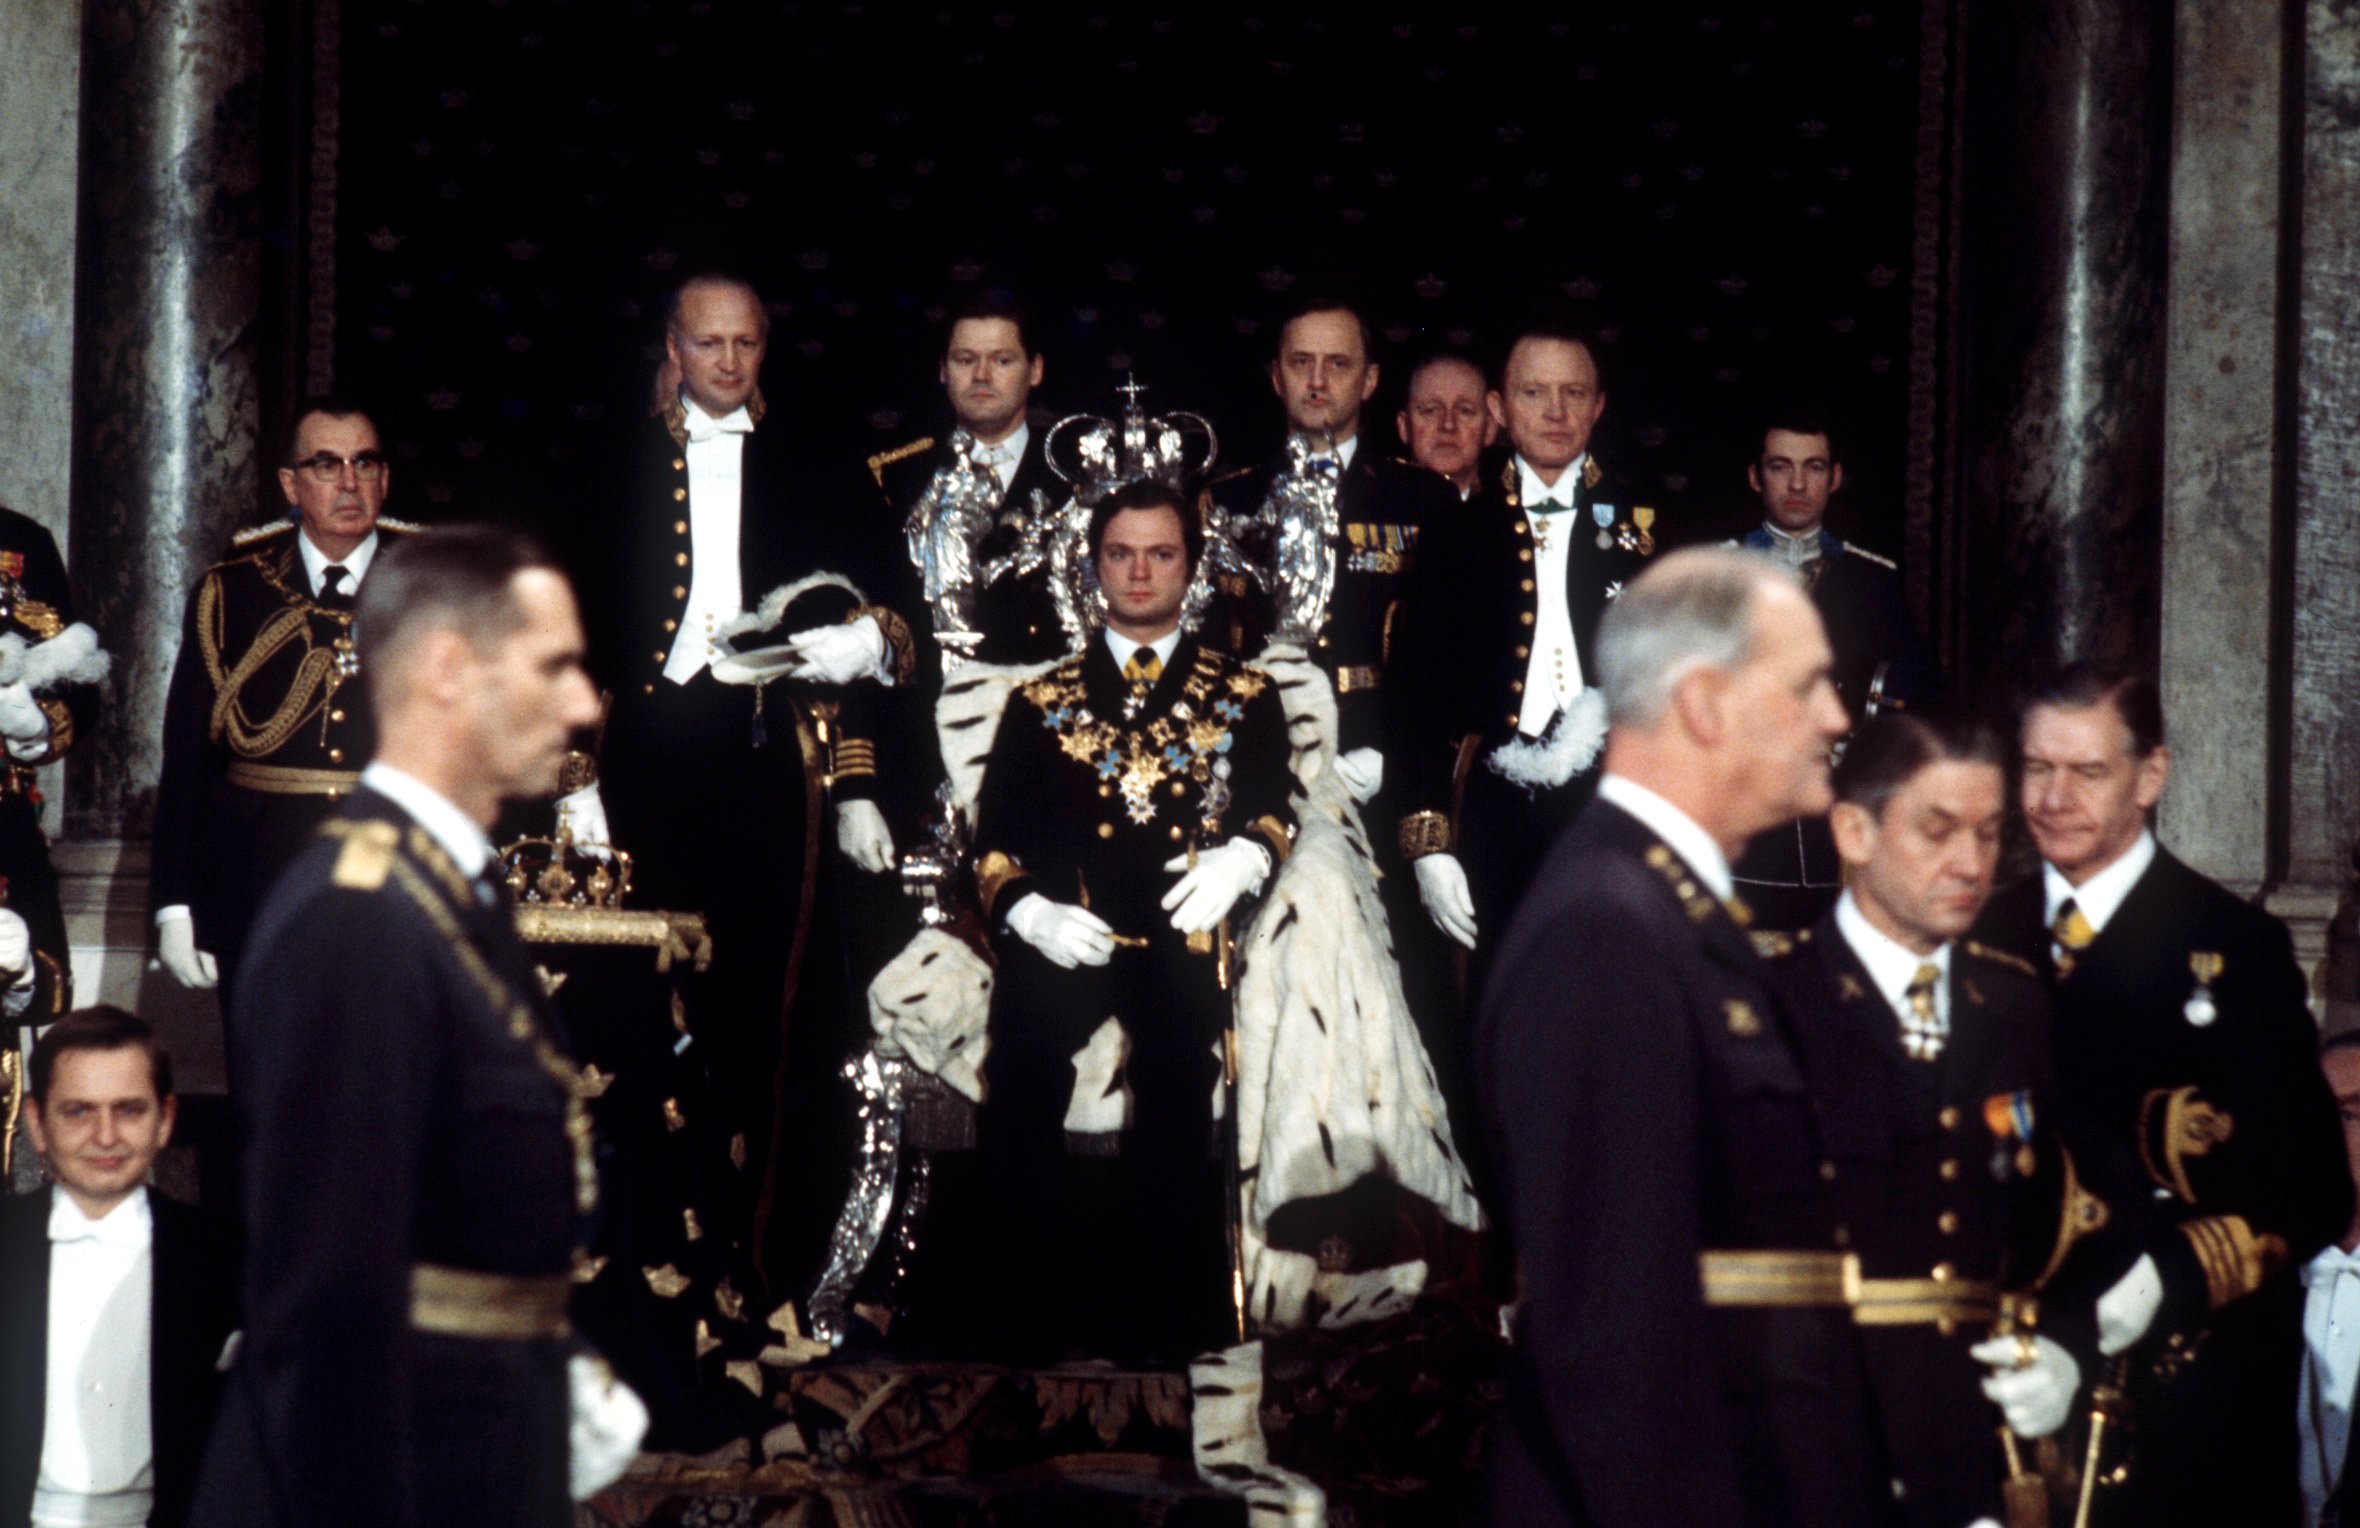 Senast manteln var i ceremoniellt bruk var vid riksdagens högtidliga öppnande 1974 då den låg draperad över silvertronen. 